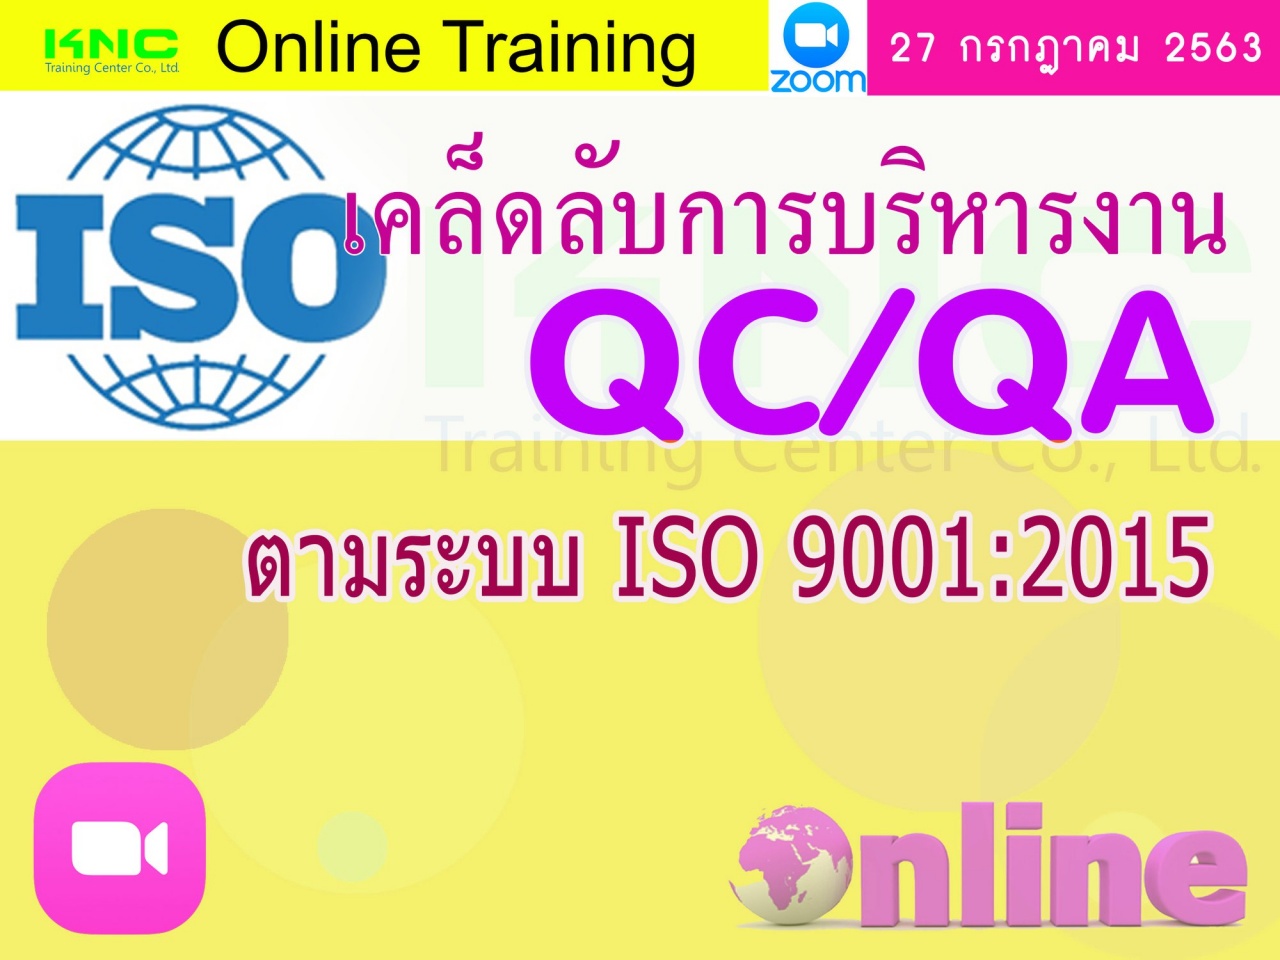 สัมมนา Online : เคล็ดลับการบริหารงาน QC/QA ตามระบบ ISO 9001:2015